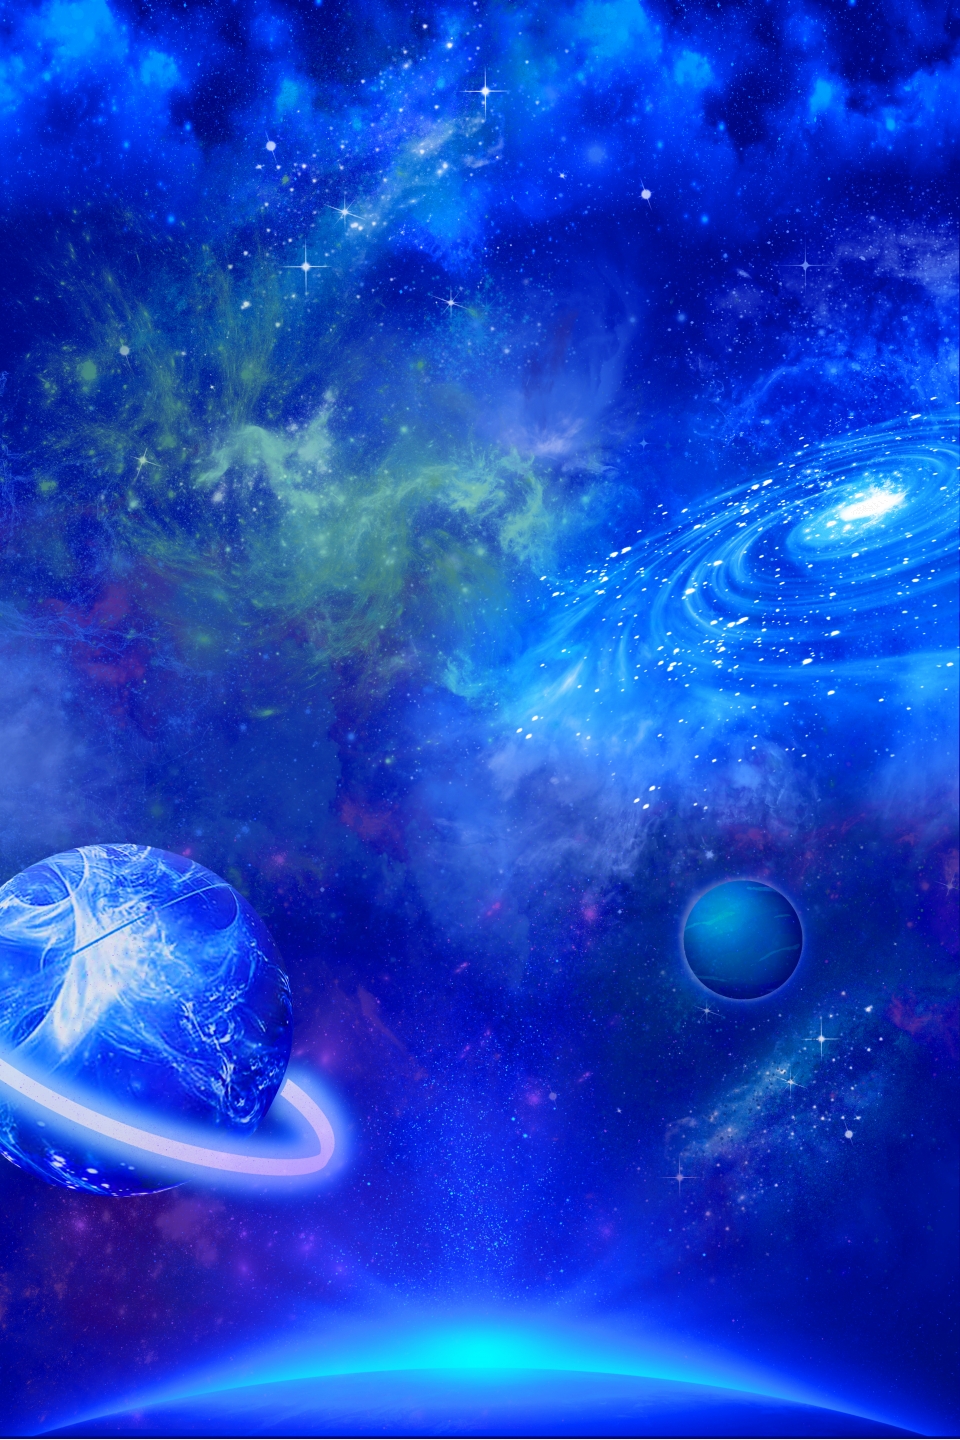 pngtree-blue-atmospheric-cosmic-galaxy-image_169107.jpg